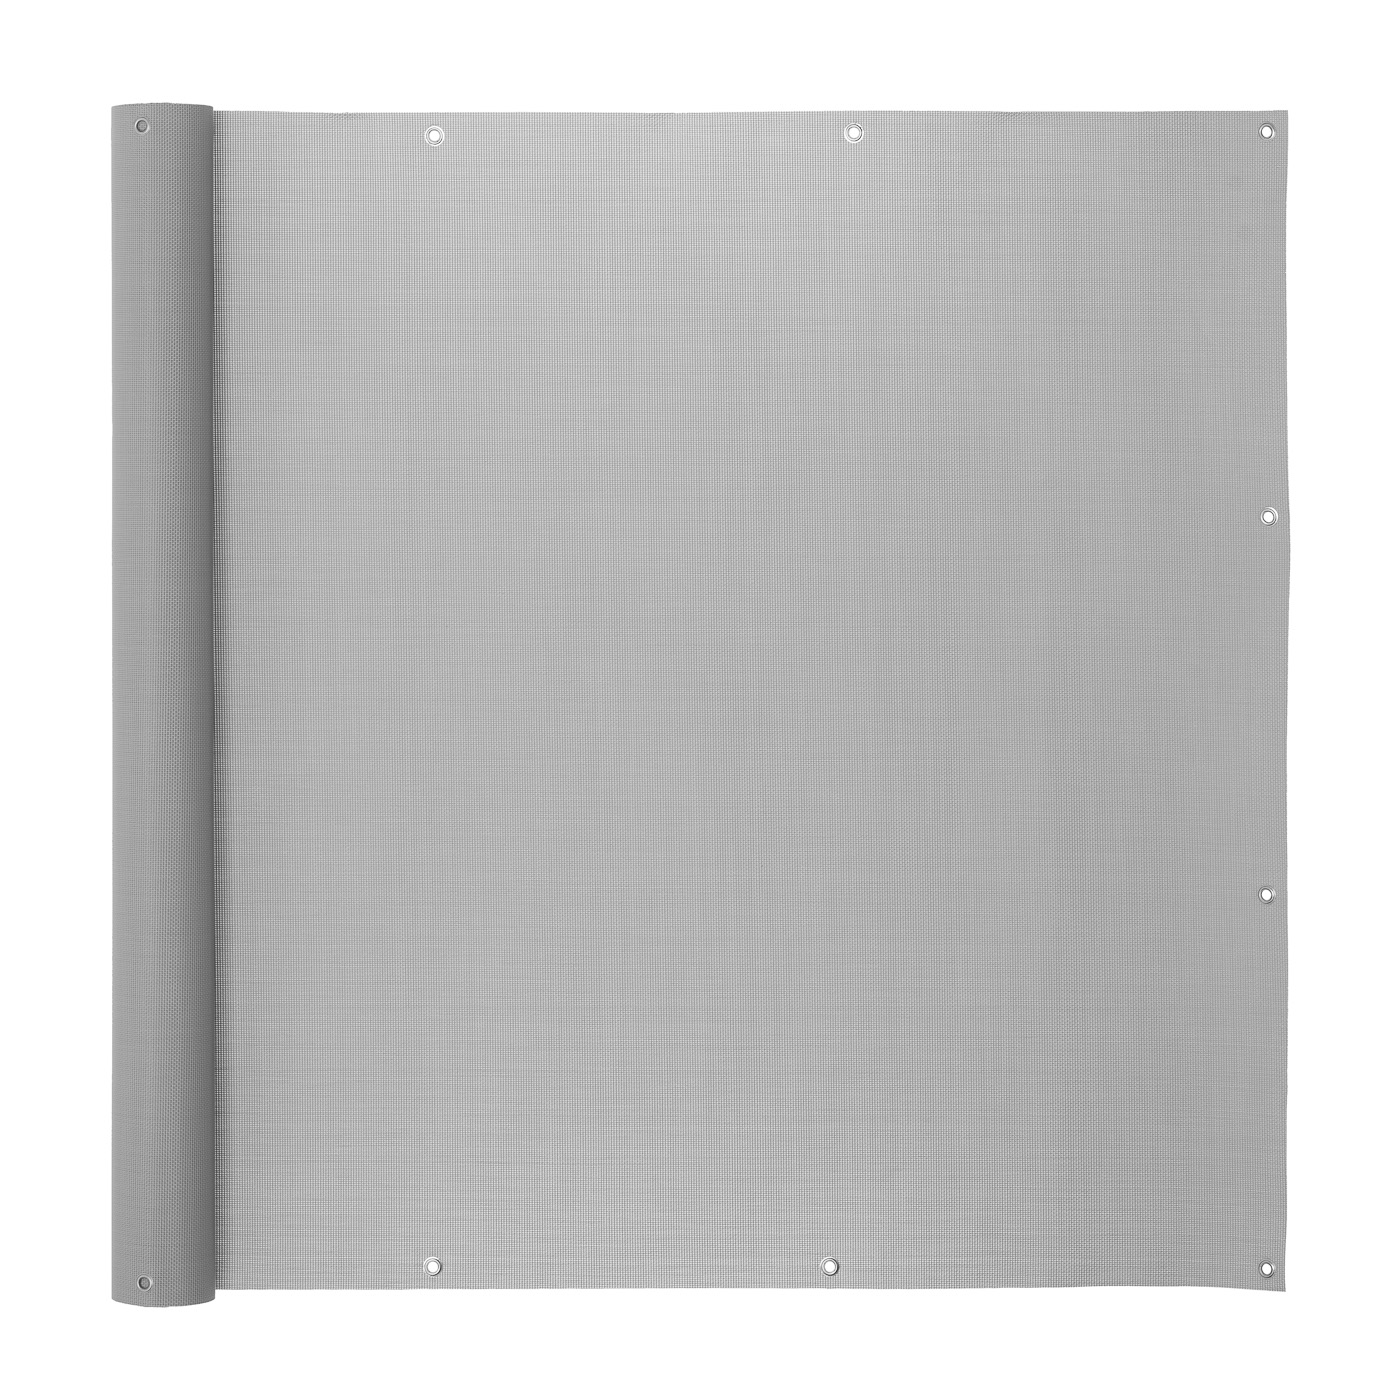 Balkonsichtschutz PVC Balkonverkleidung Balkonbespannung Zaun Verkleidung Grau